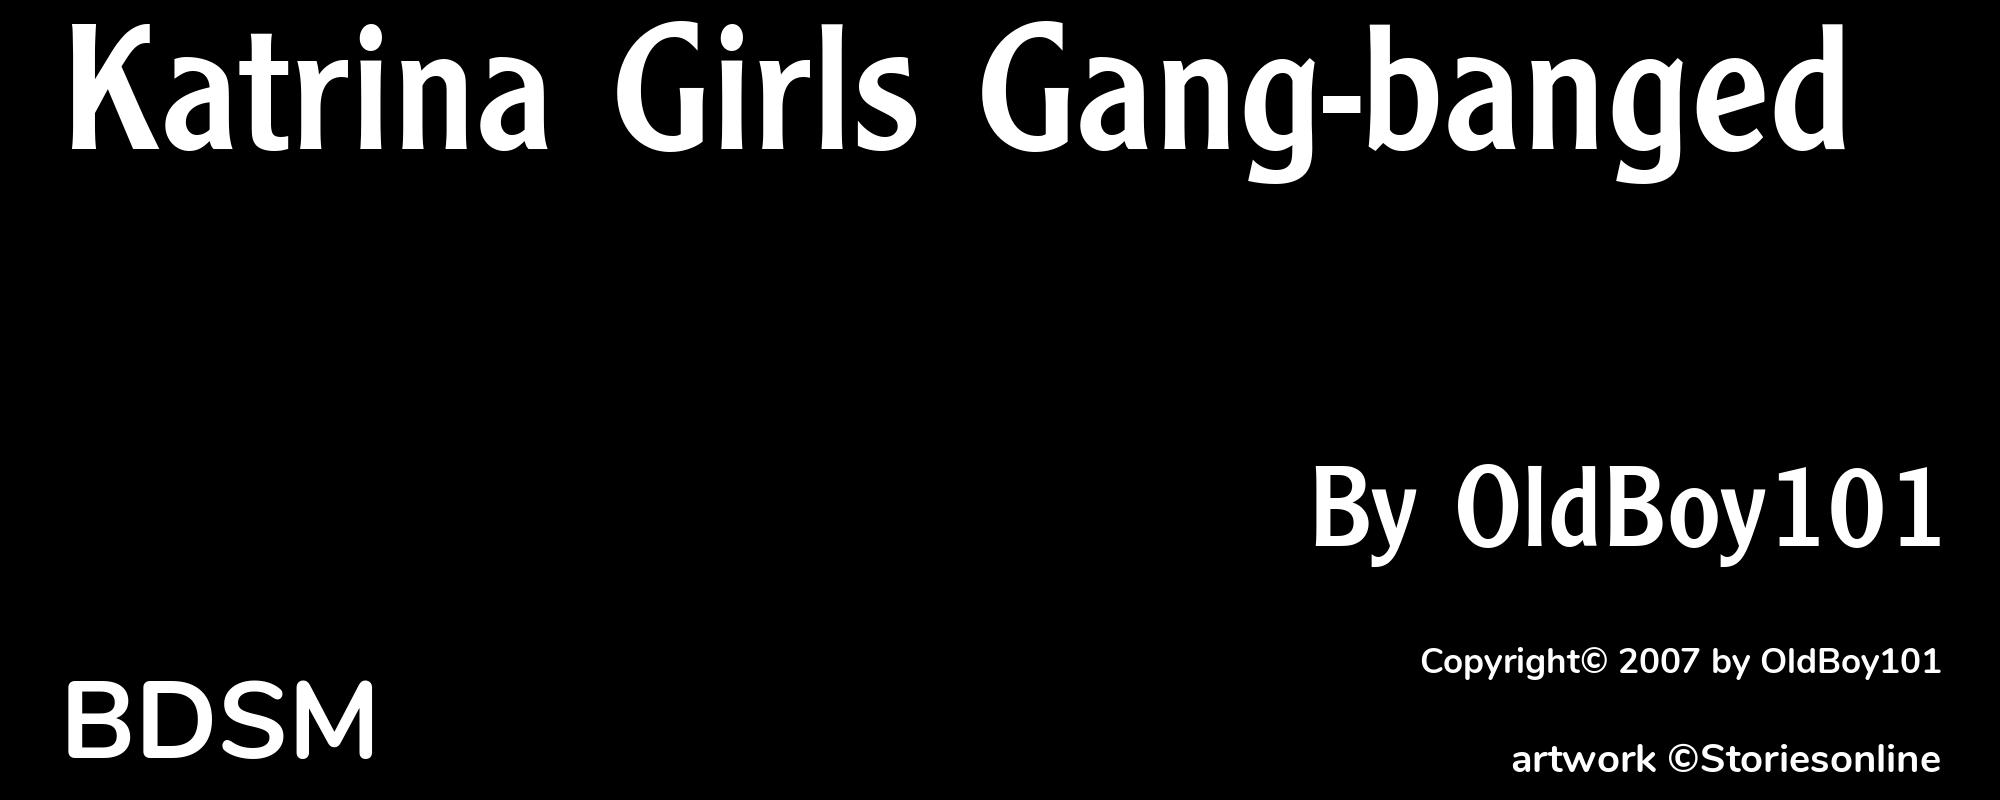 Katrina Girls Gang-banged - Cover